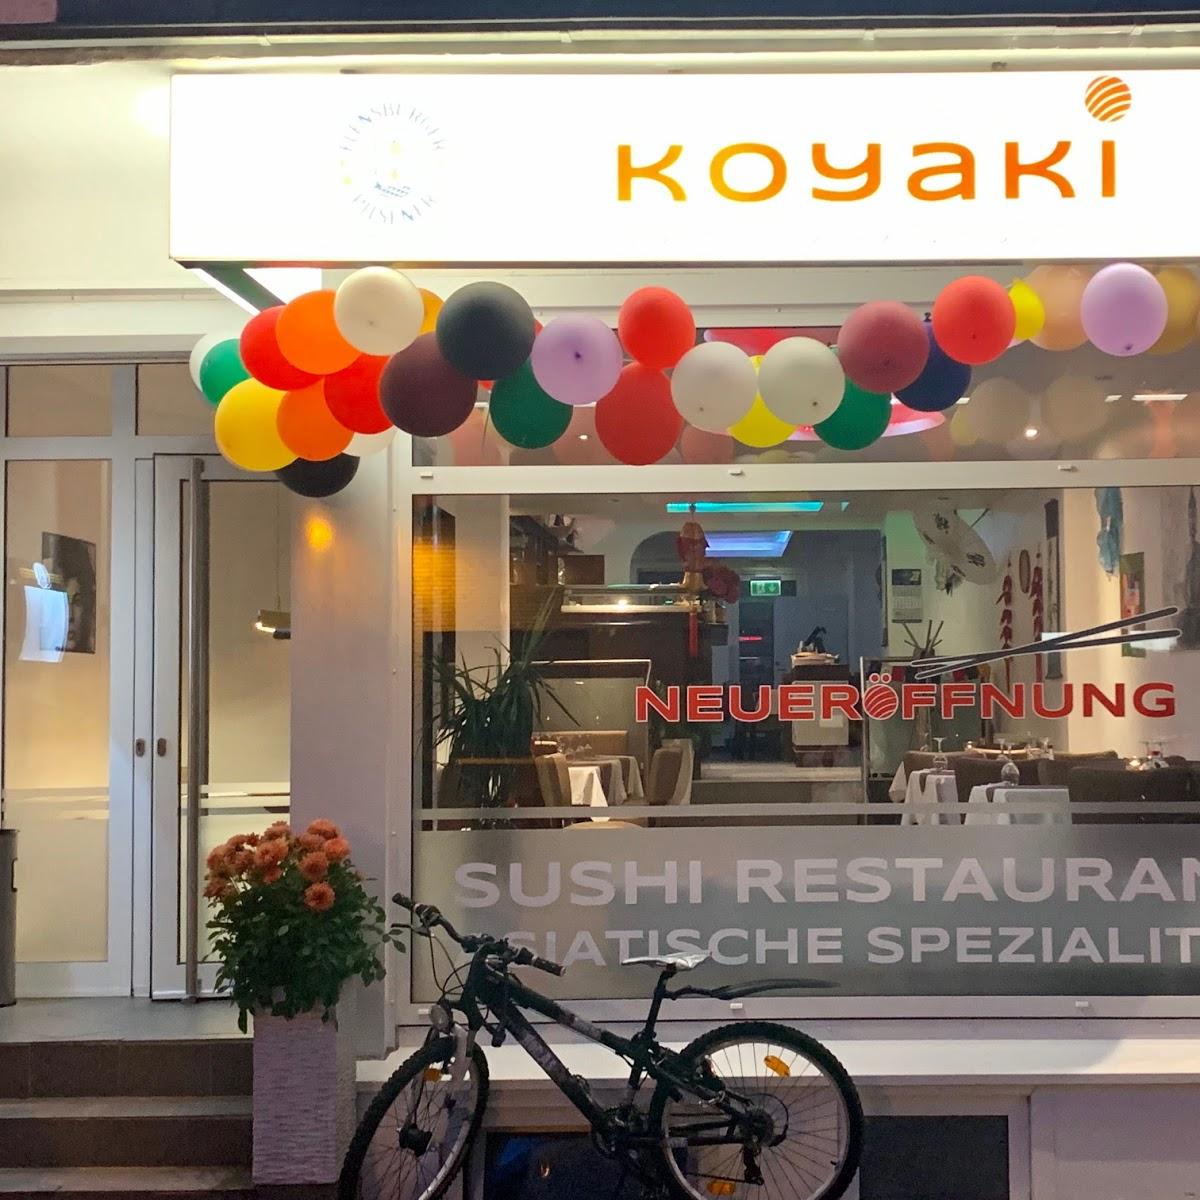 Restaurant "KOYAKI - SUSHI & ASIAN FUSION IN BAD OLDESLOE" in  Oldesloe